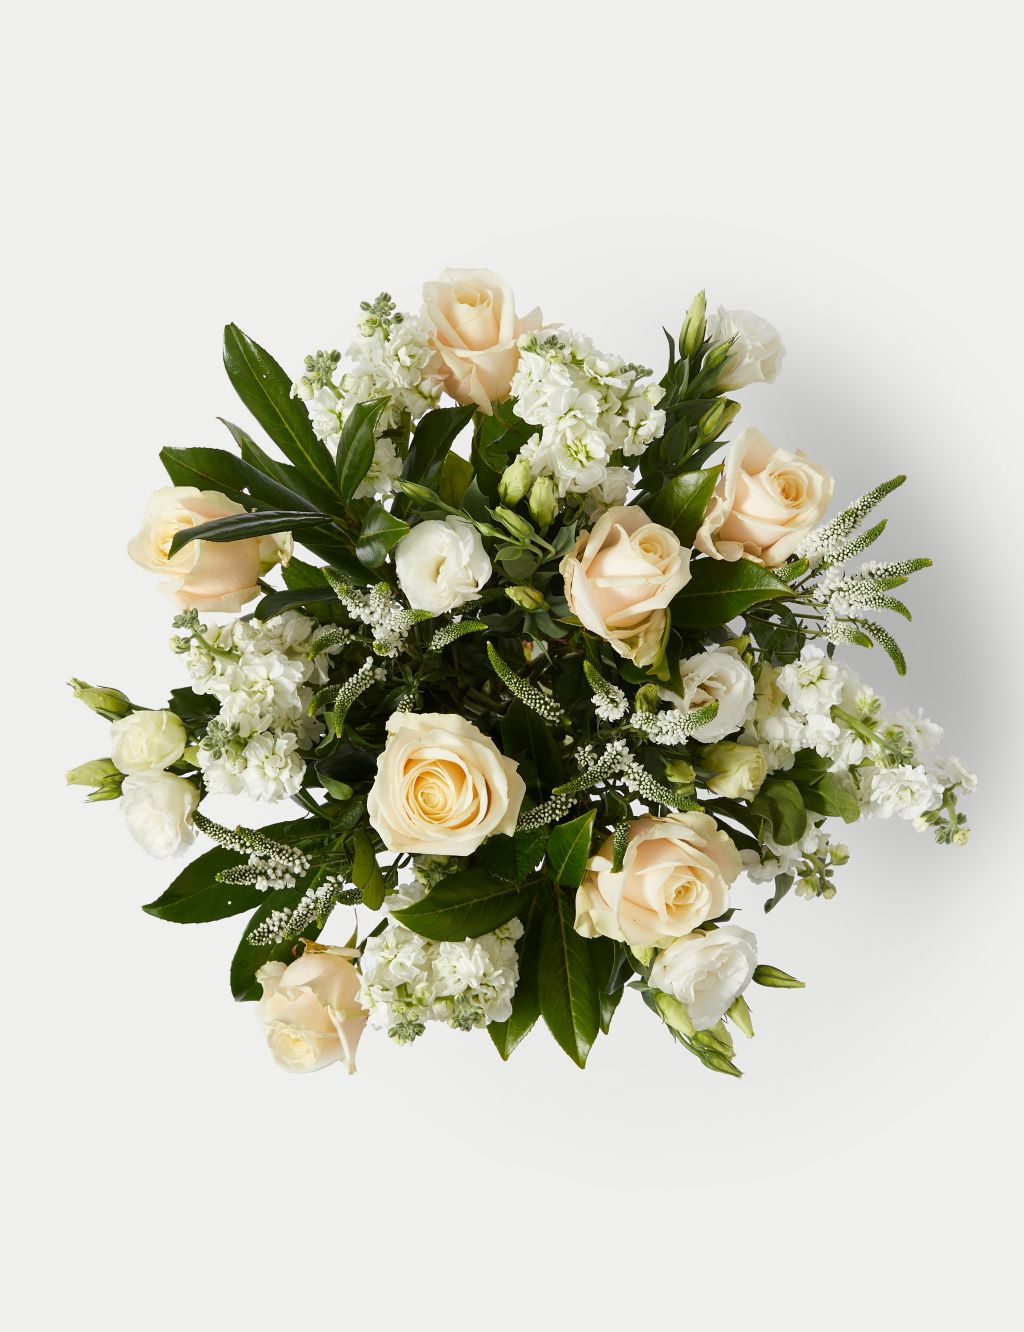 Rose, Delphinium & Stocks Bouquet